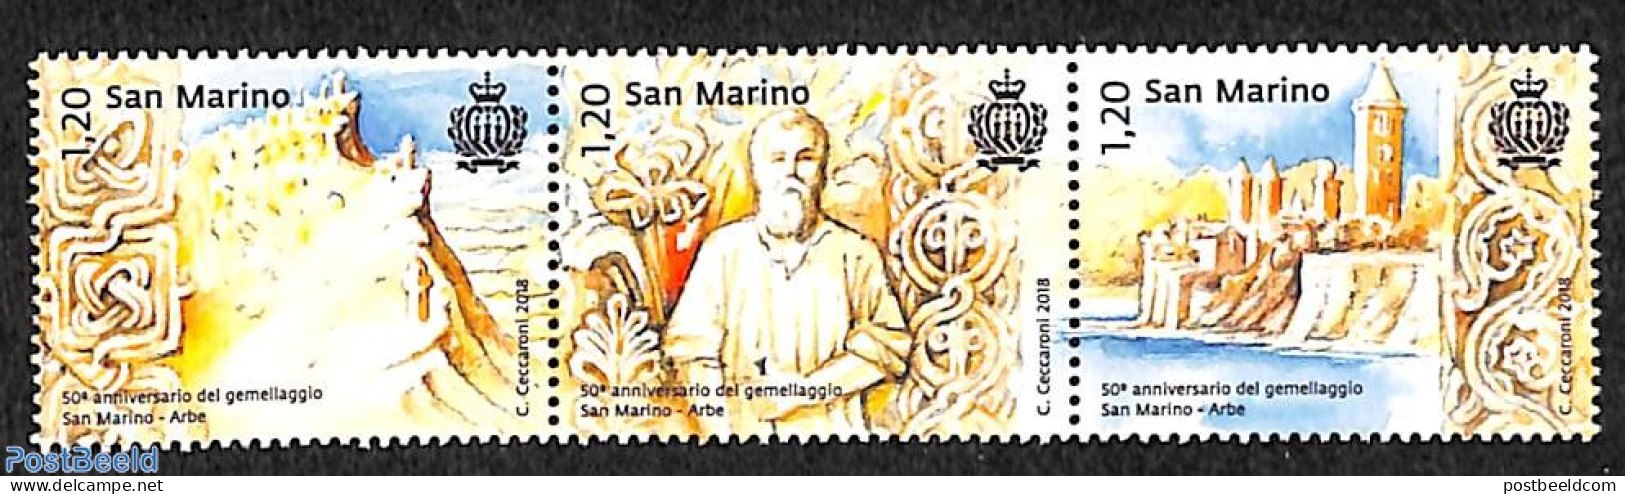 San Marino 2018 San Marino-Arbe 3v [::], Mint NH - Ongebruikt